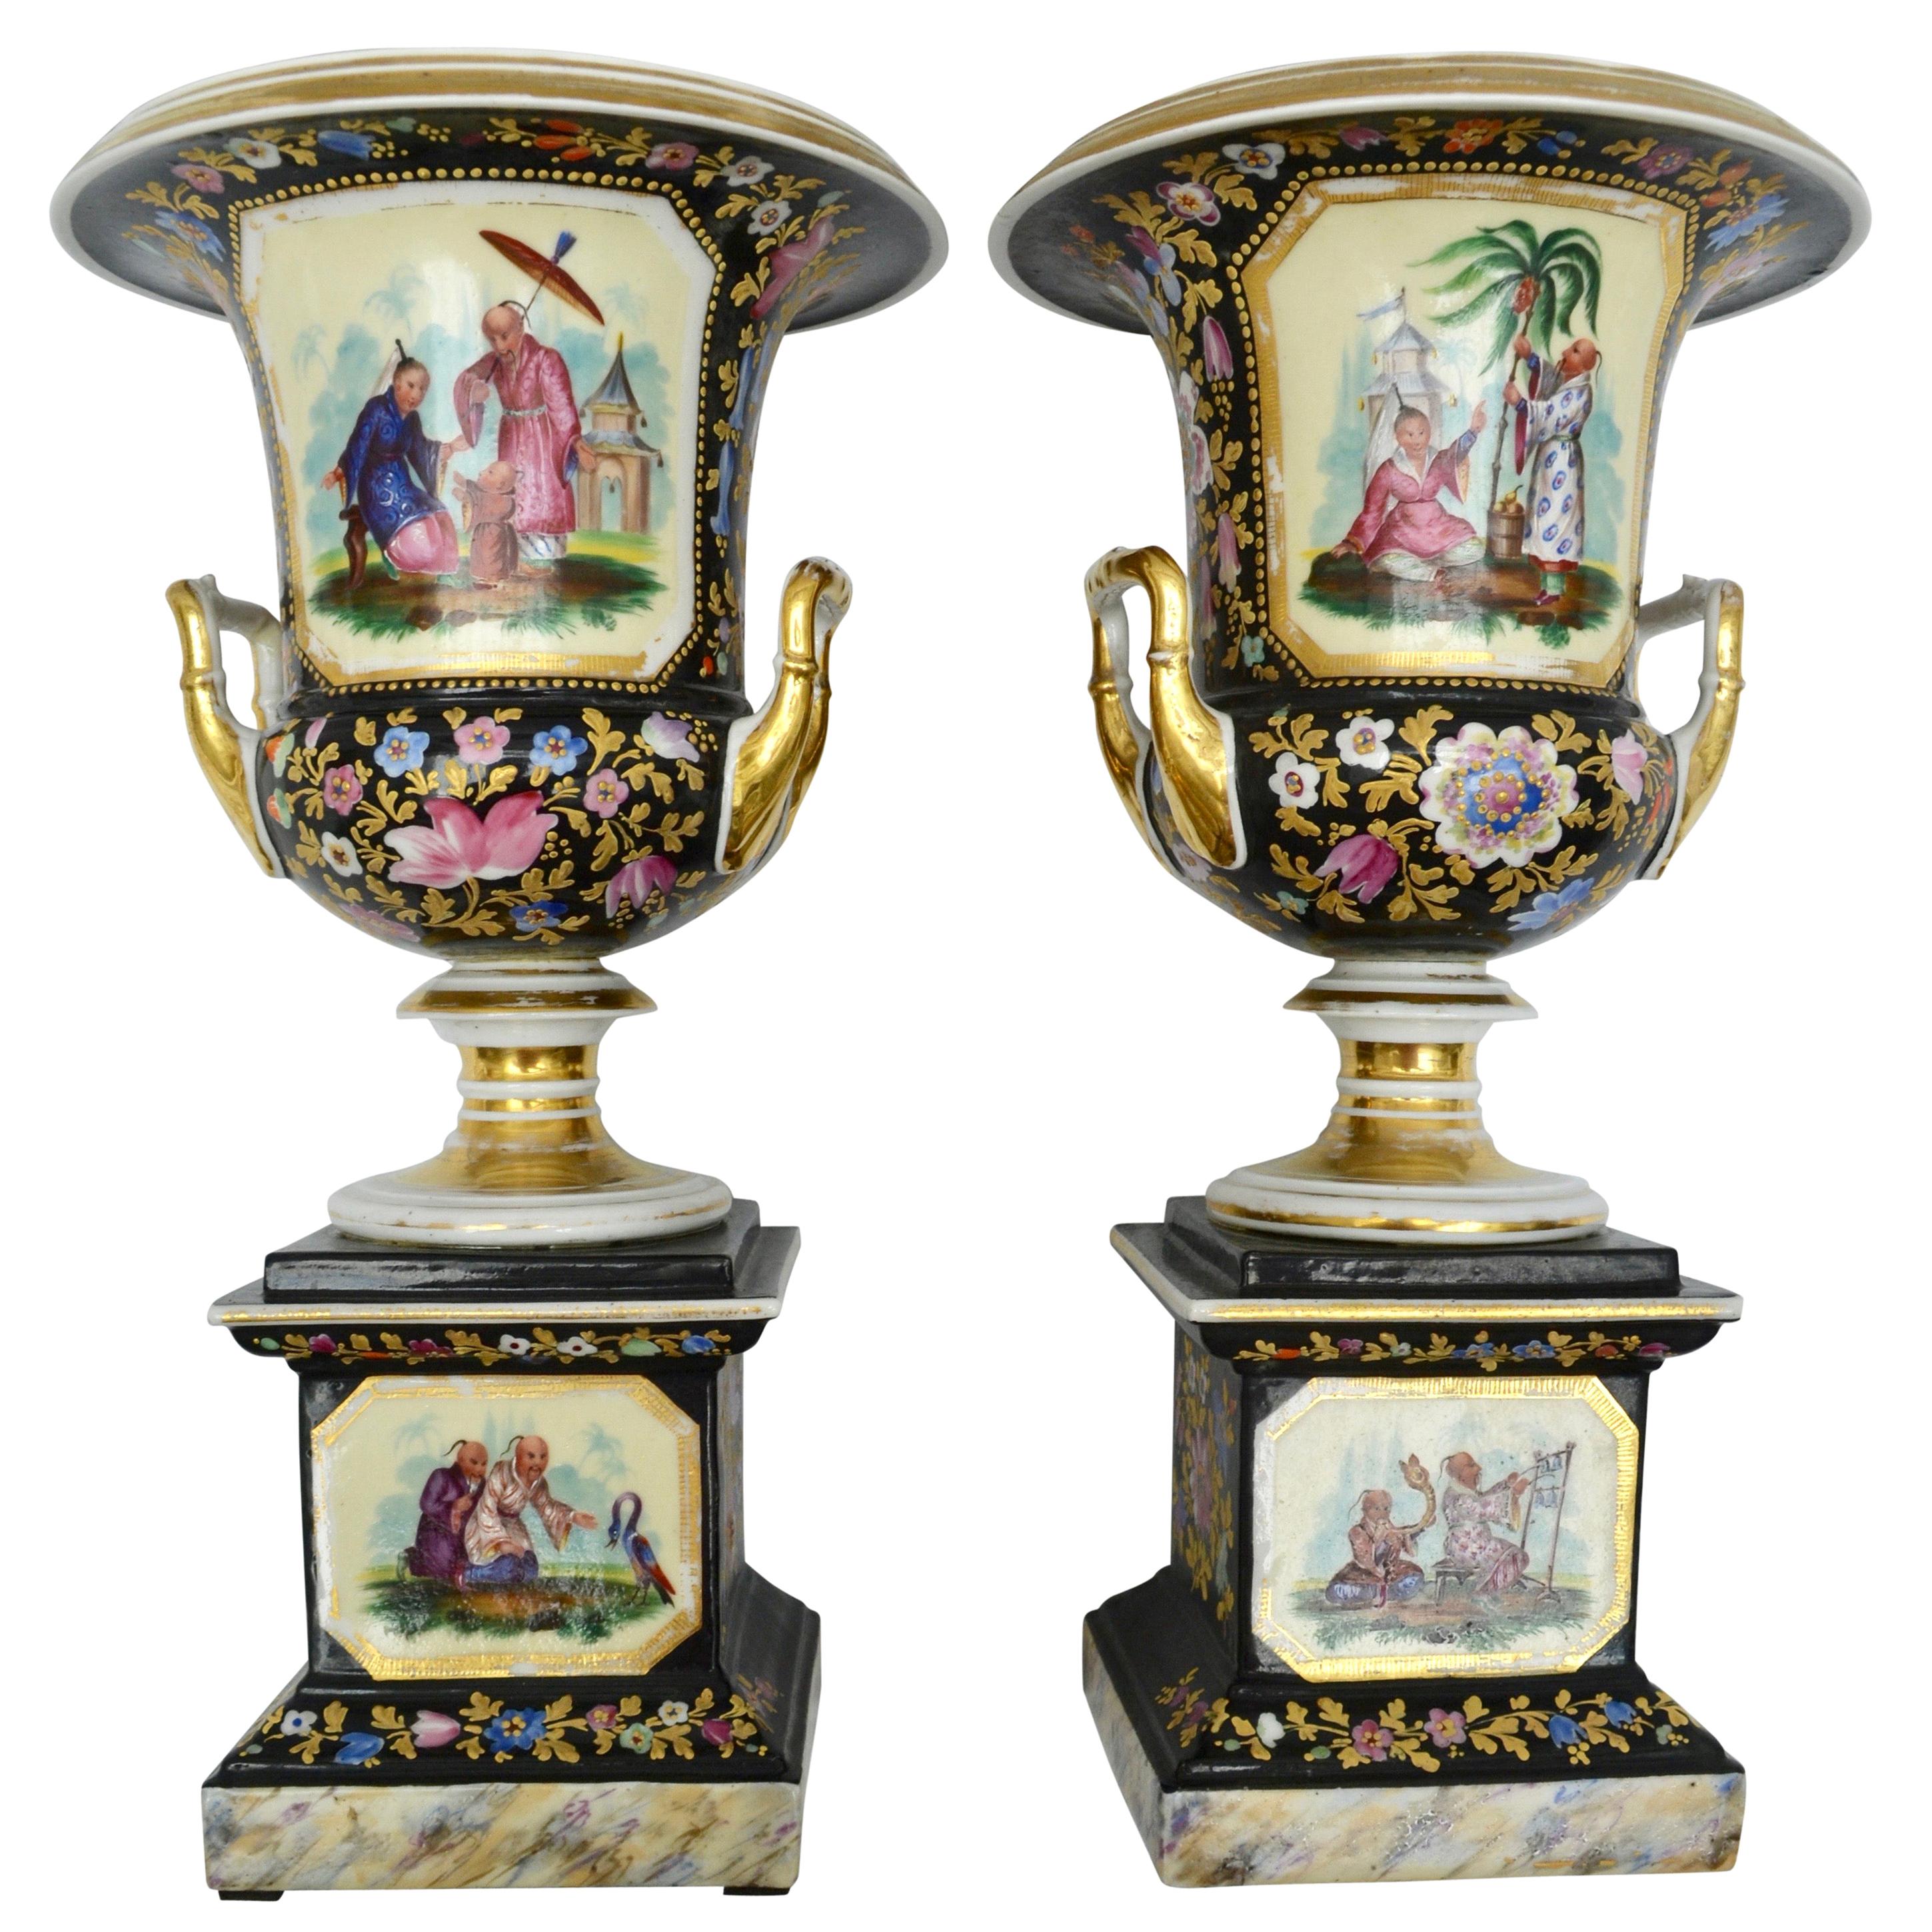 Paire de vases en porcelaine "Chinoiserie" française du 19ème siècle